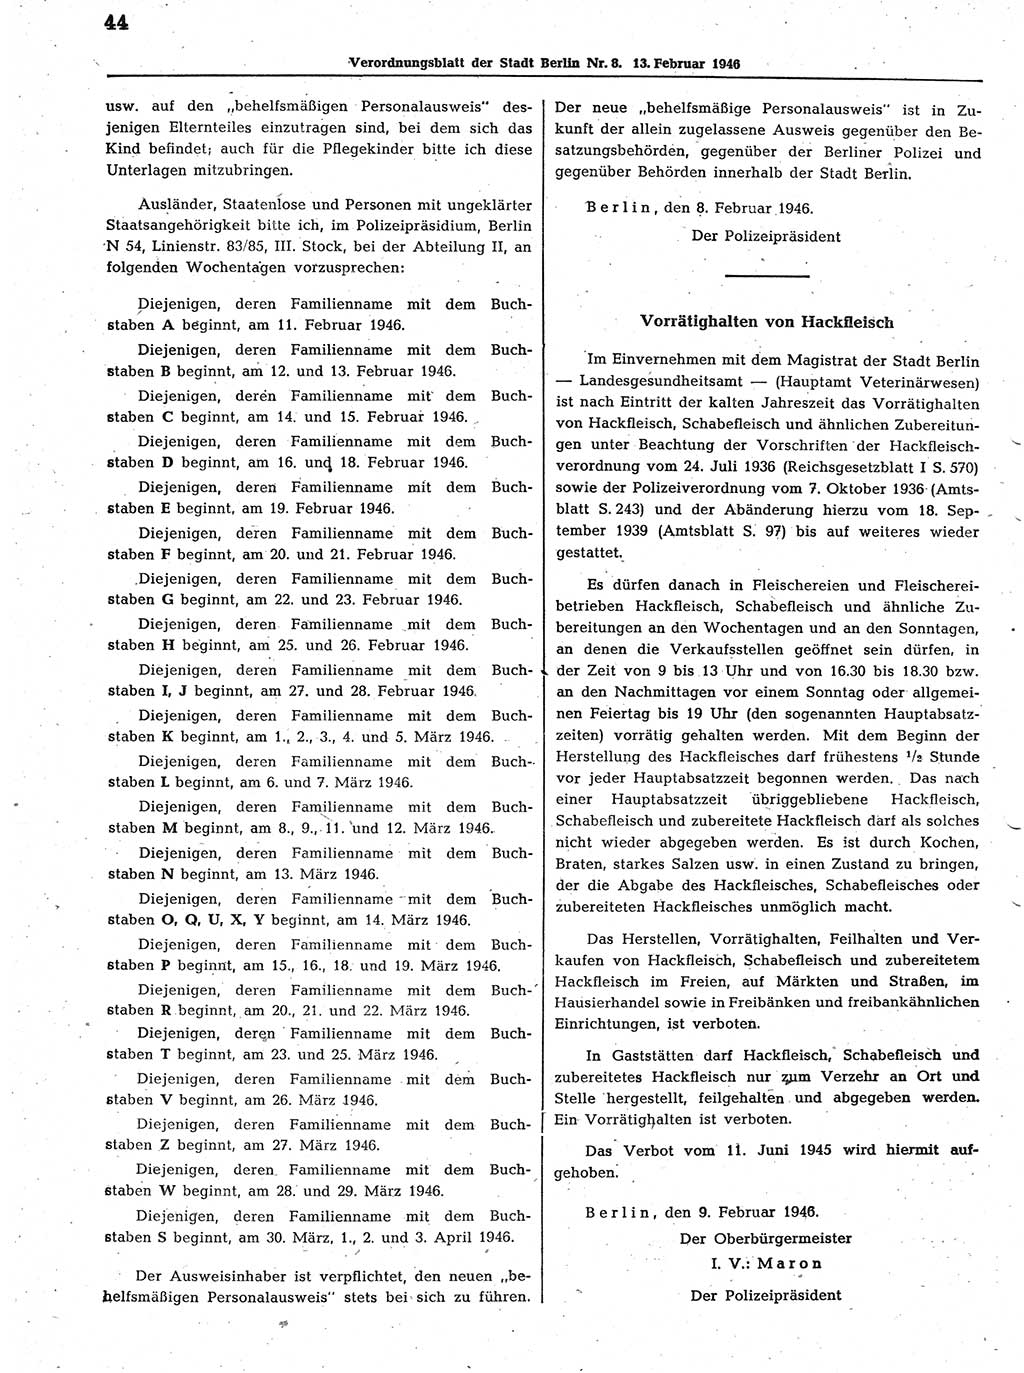 Verordnungsblatt (VOBl.) der Stadt Berlin, für Groß-Berlin 1946, Seite 44 (VOBl. Bln. 1946, S. 44)